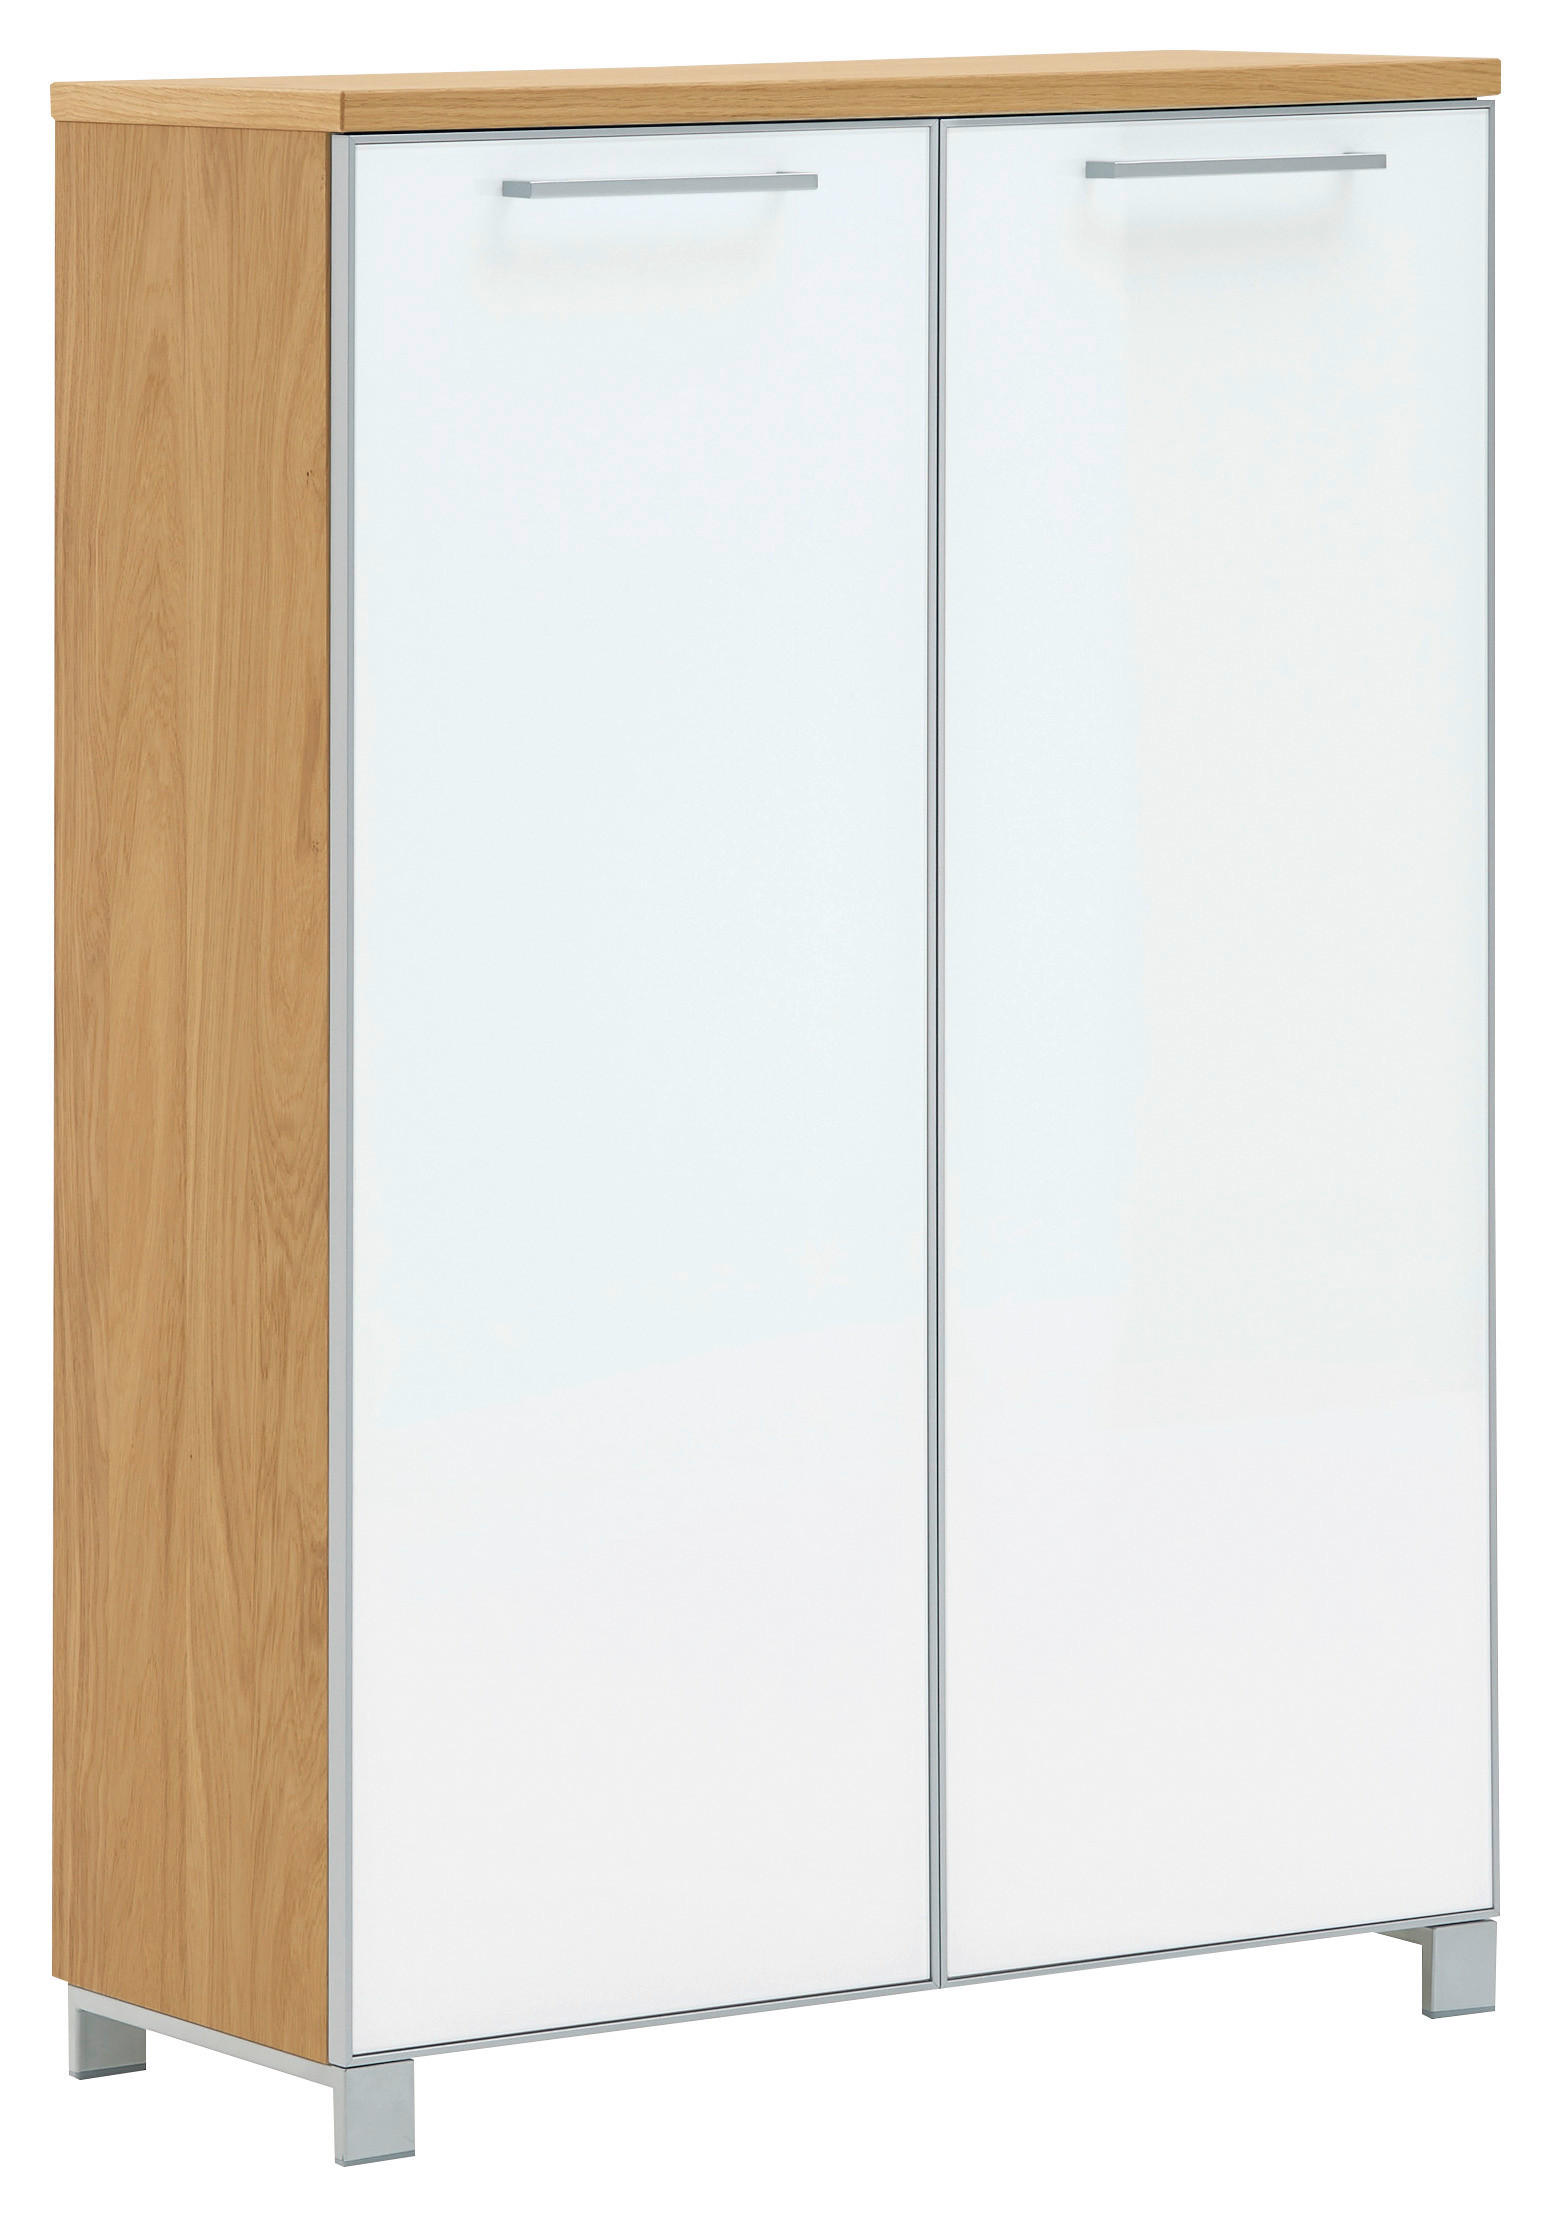 SCHUHSCHRANK Eiche furniert Weiß, Eiche Bianco  - Chromfarben/Eiche Bianco, Design, Glas/Holz (84/126/37cm)